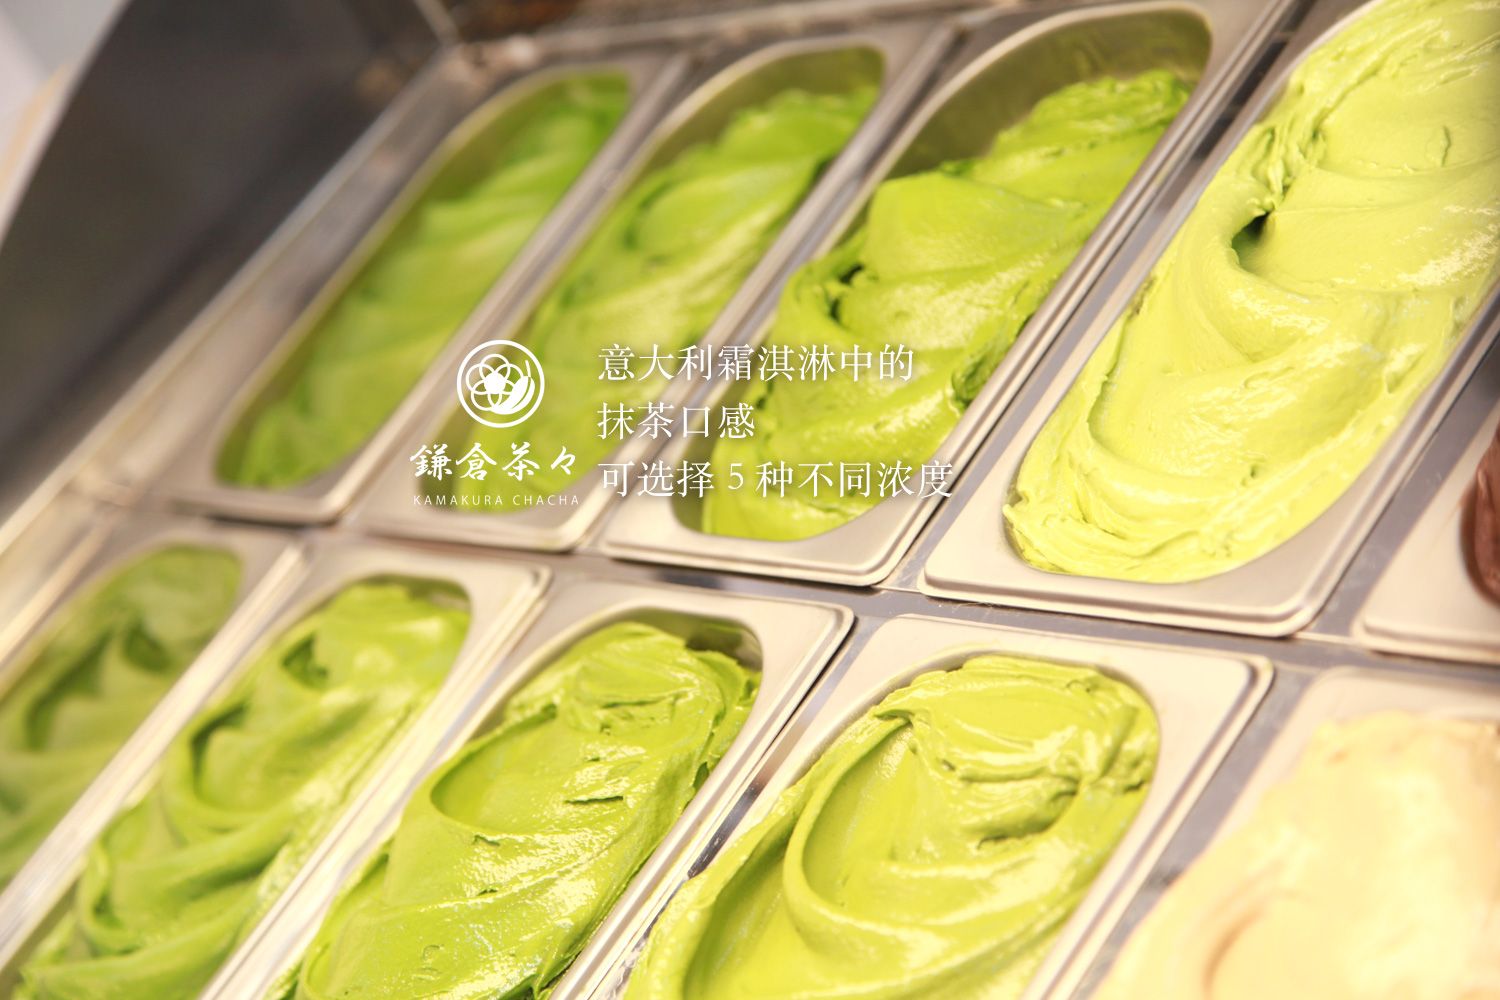 意大利霜淇淋中的抹茶口感可选择5种不同浓度